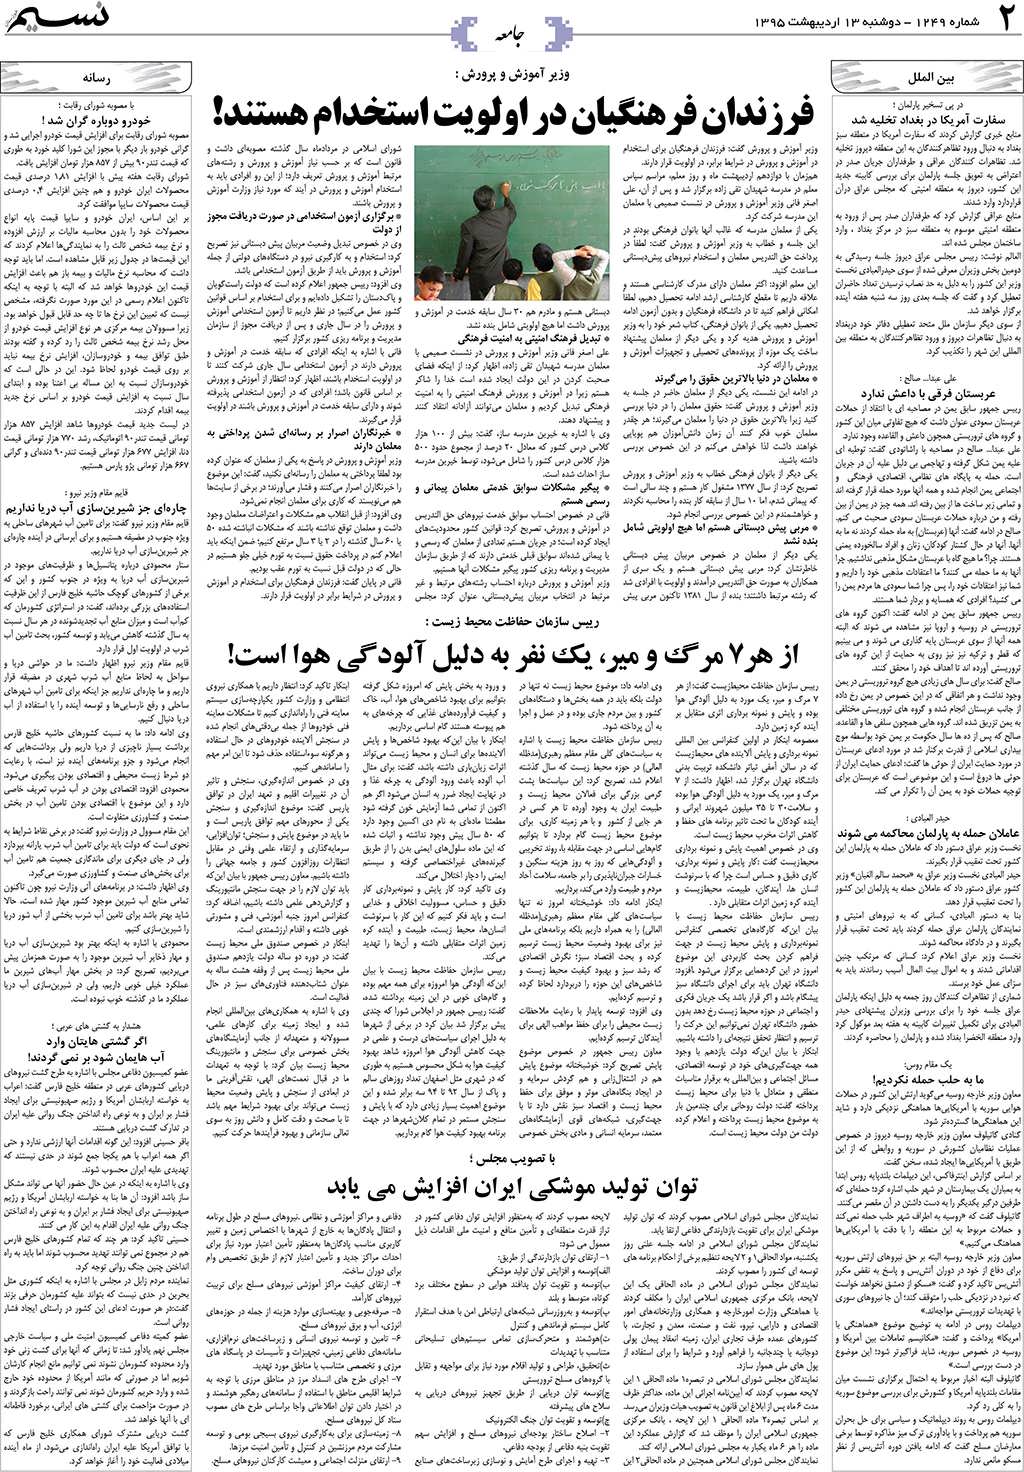 صفحه جامعه روزنامه نسیم شماره 1249